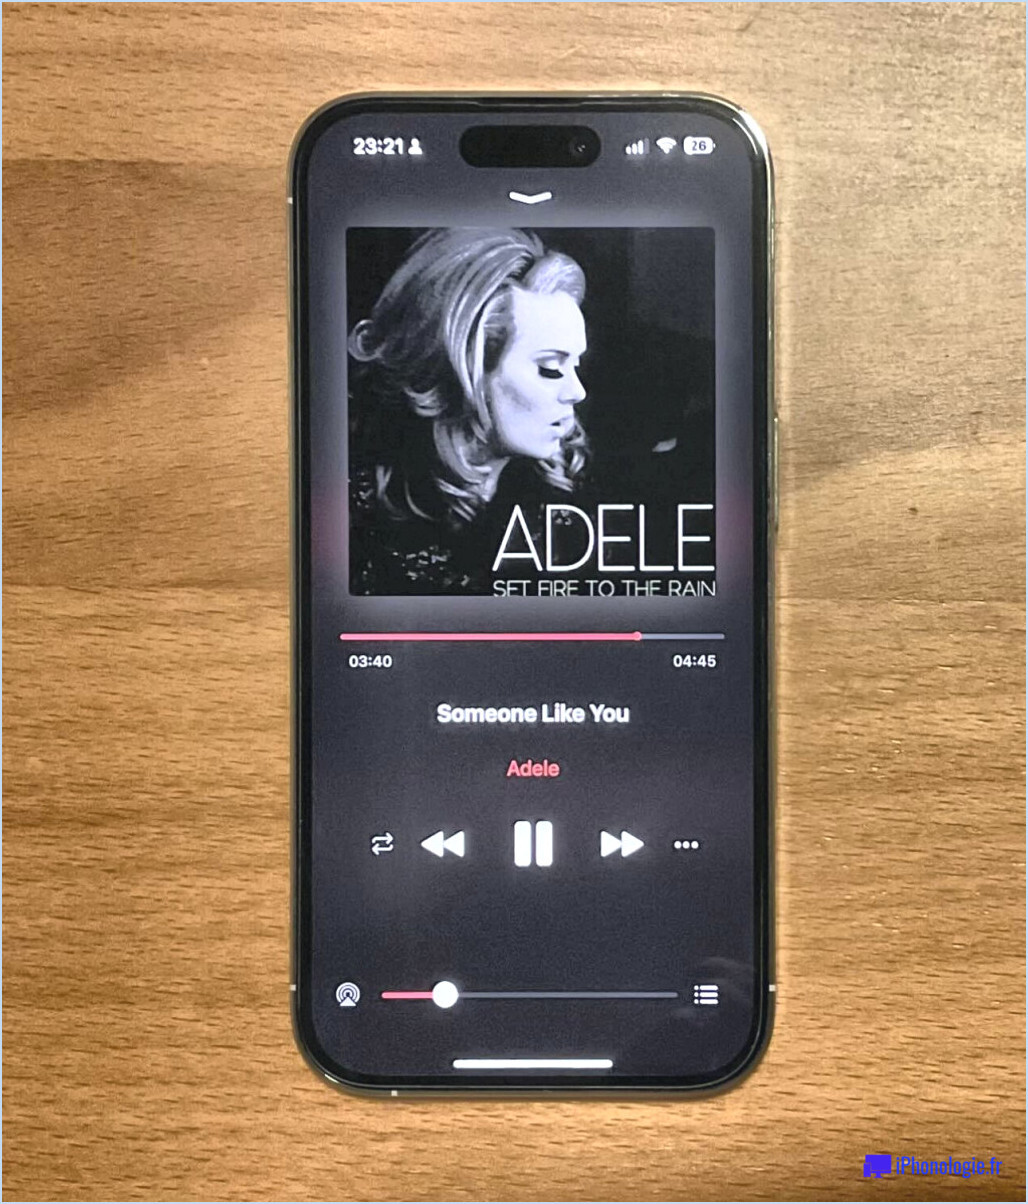 Comment afficher uniquement la musique téléchargée sur l'iphone ios 10?